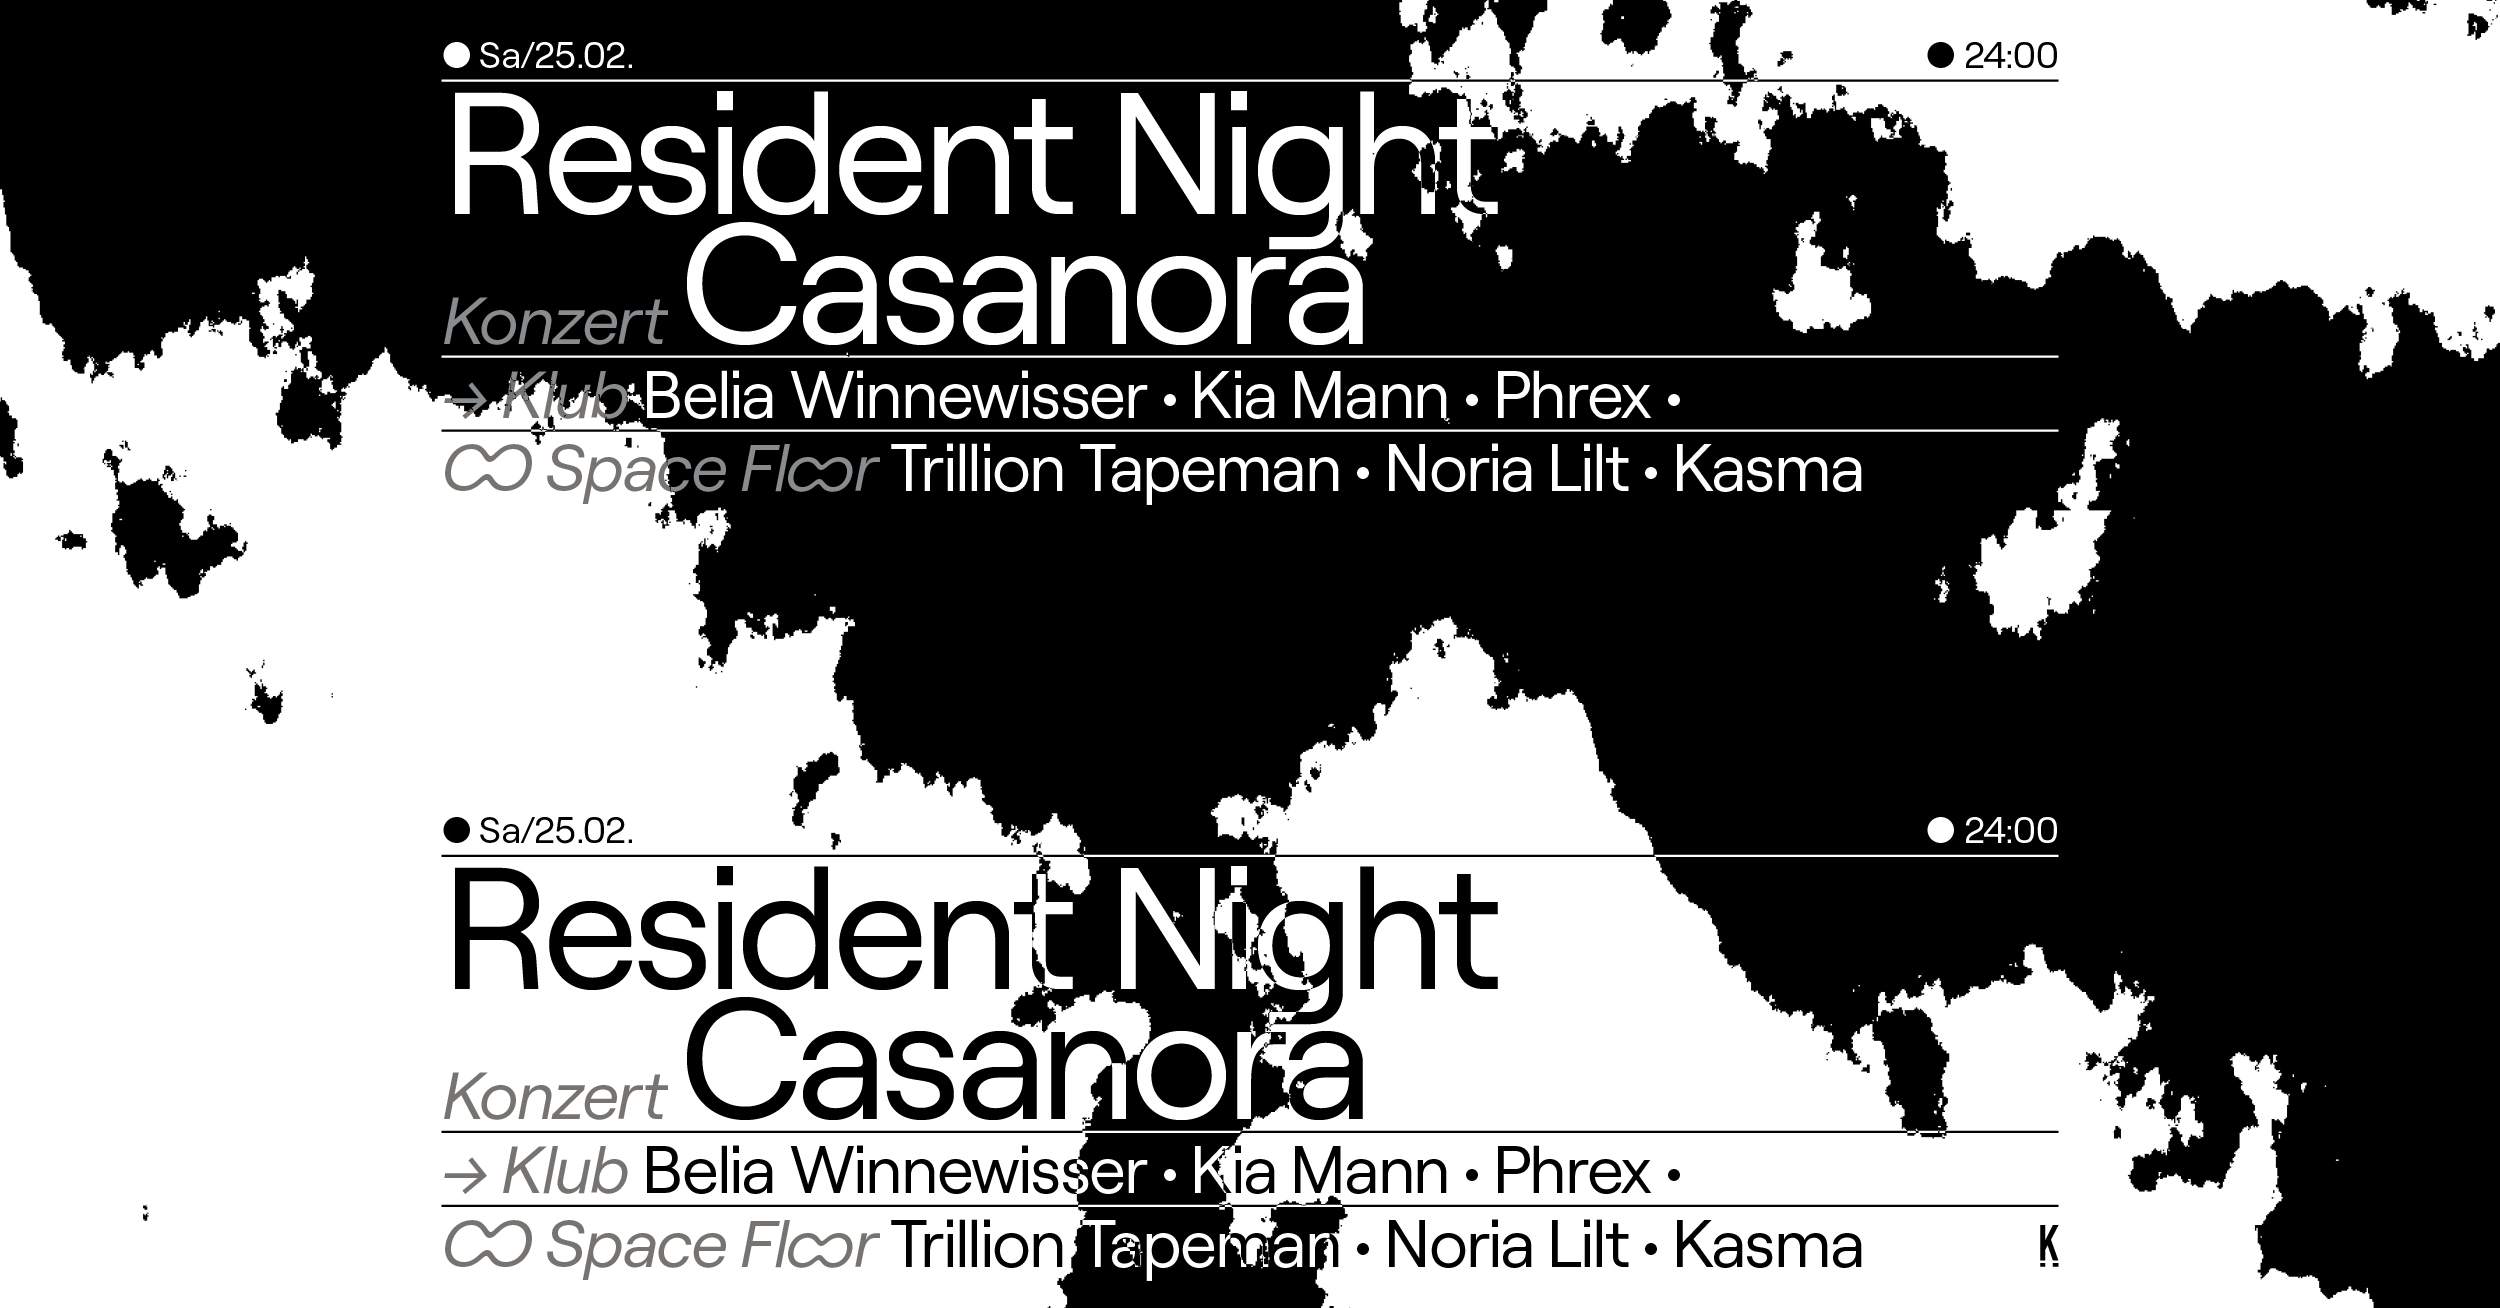 Resident Night / Konzert: Casanora - フライヤー表